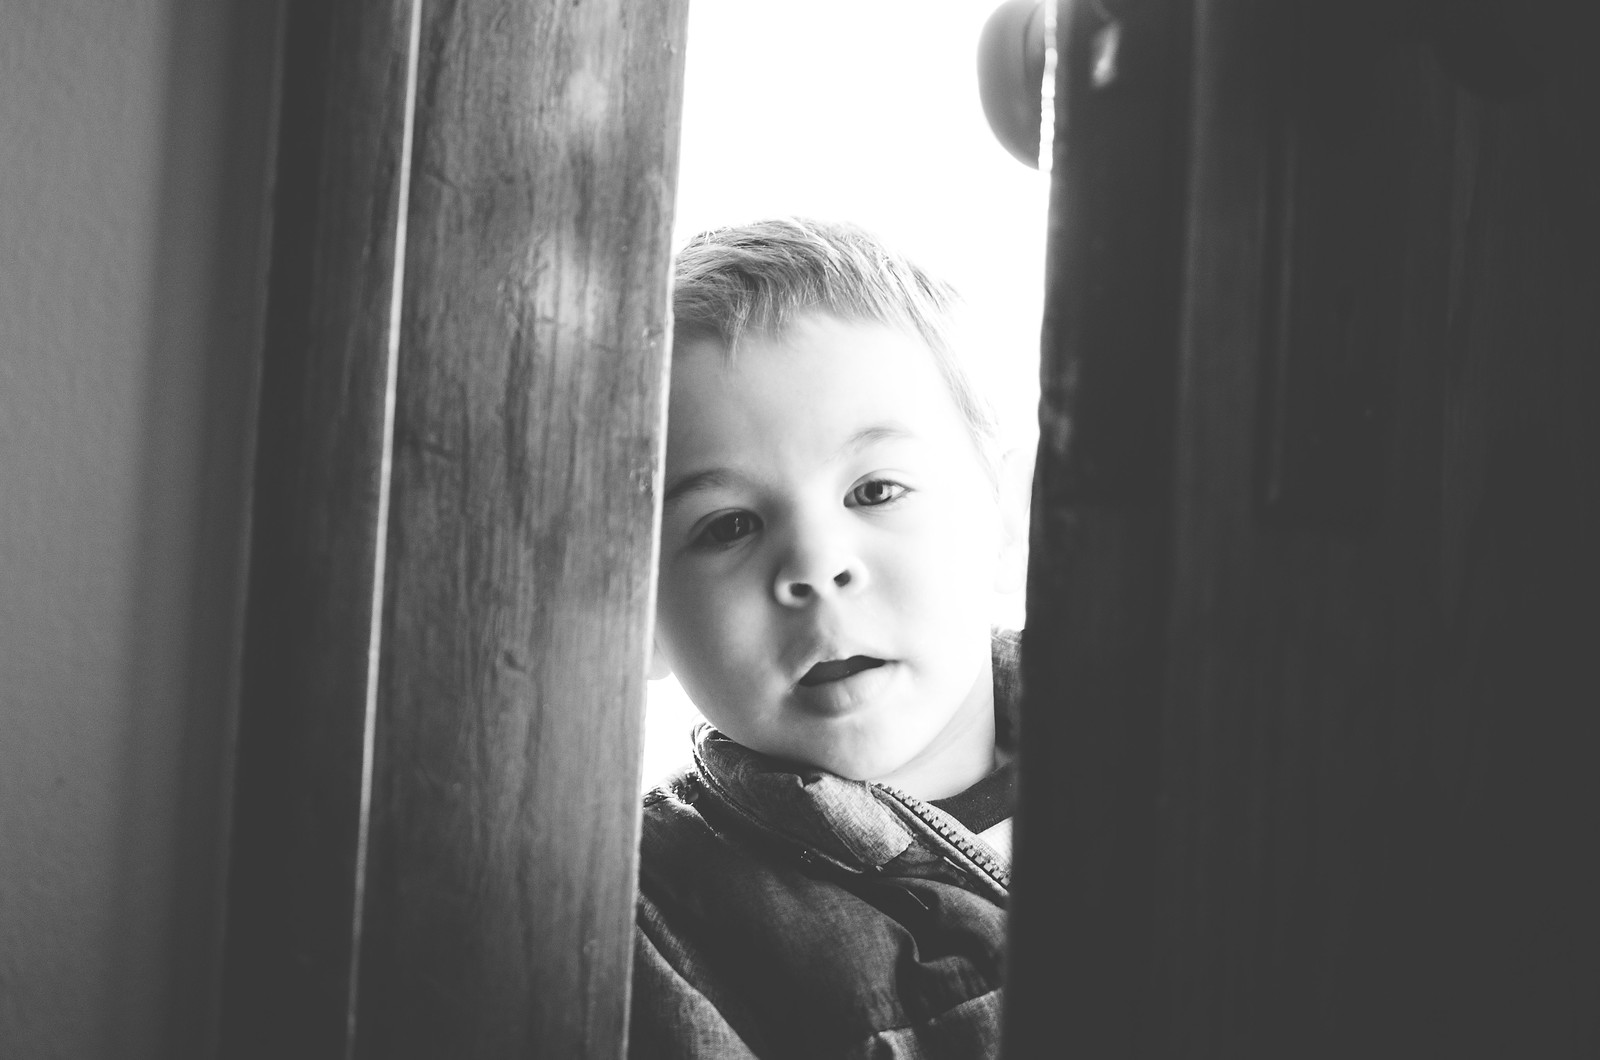 Micah in the doorway